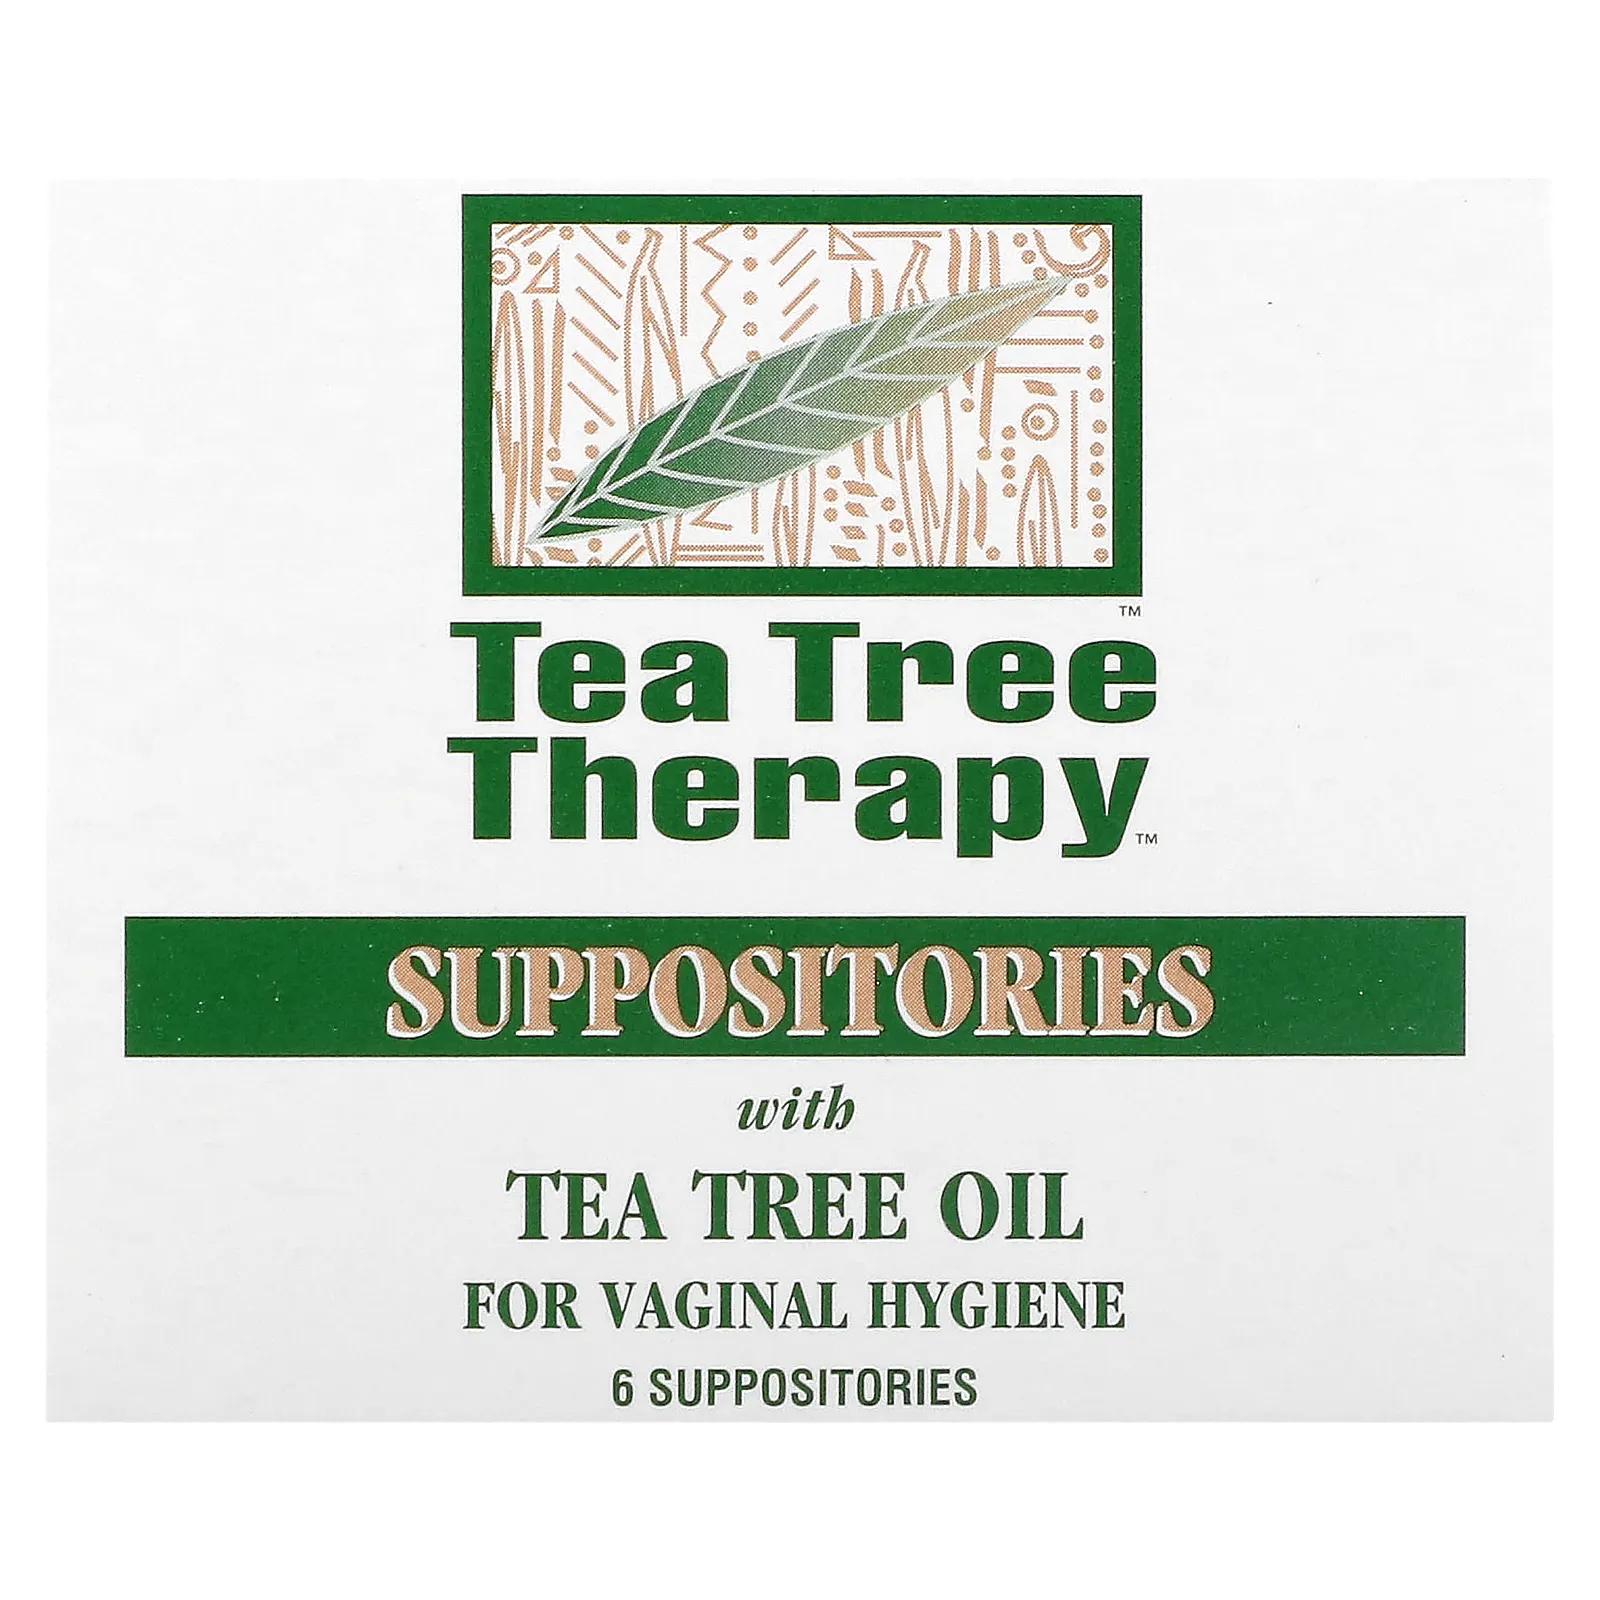 Tea Tree Therapy Суппозитории с маслом чайного дерева для гигиены влагалища 6 Suppositories tea tree therapy cвечи с маслом чайного дерева для гигиены влагалища 6 свечей